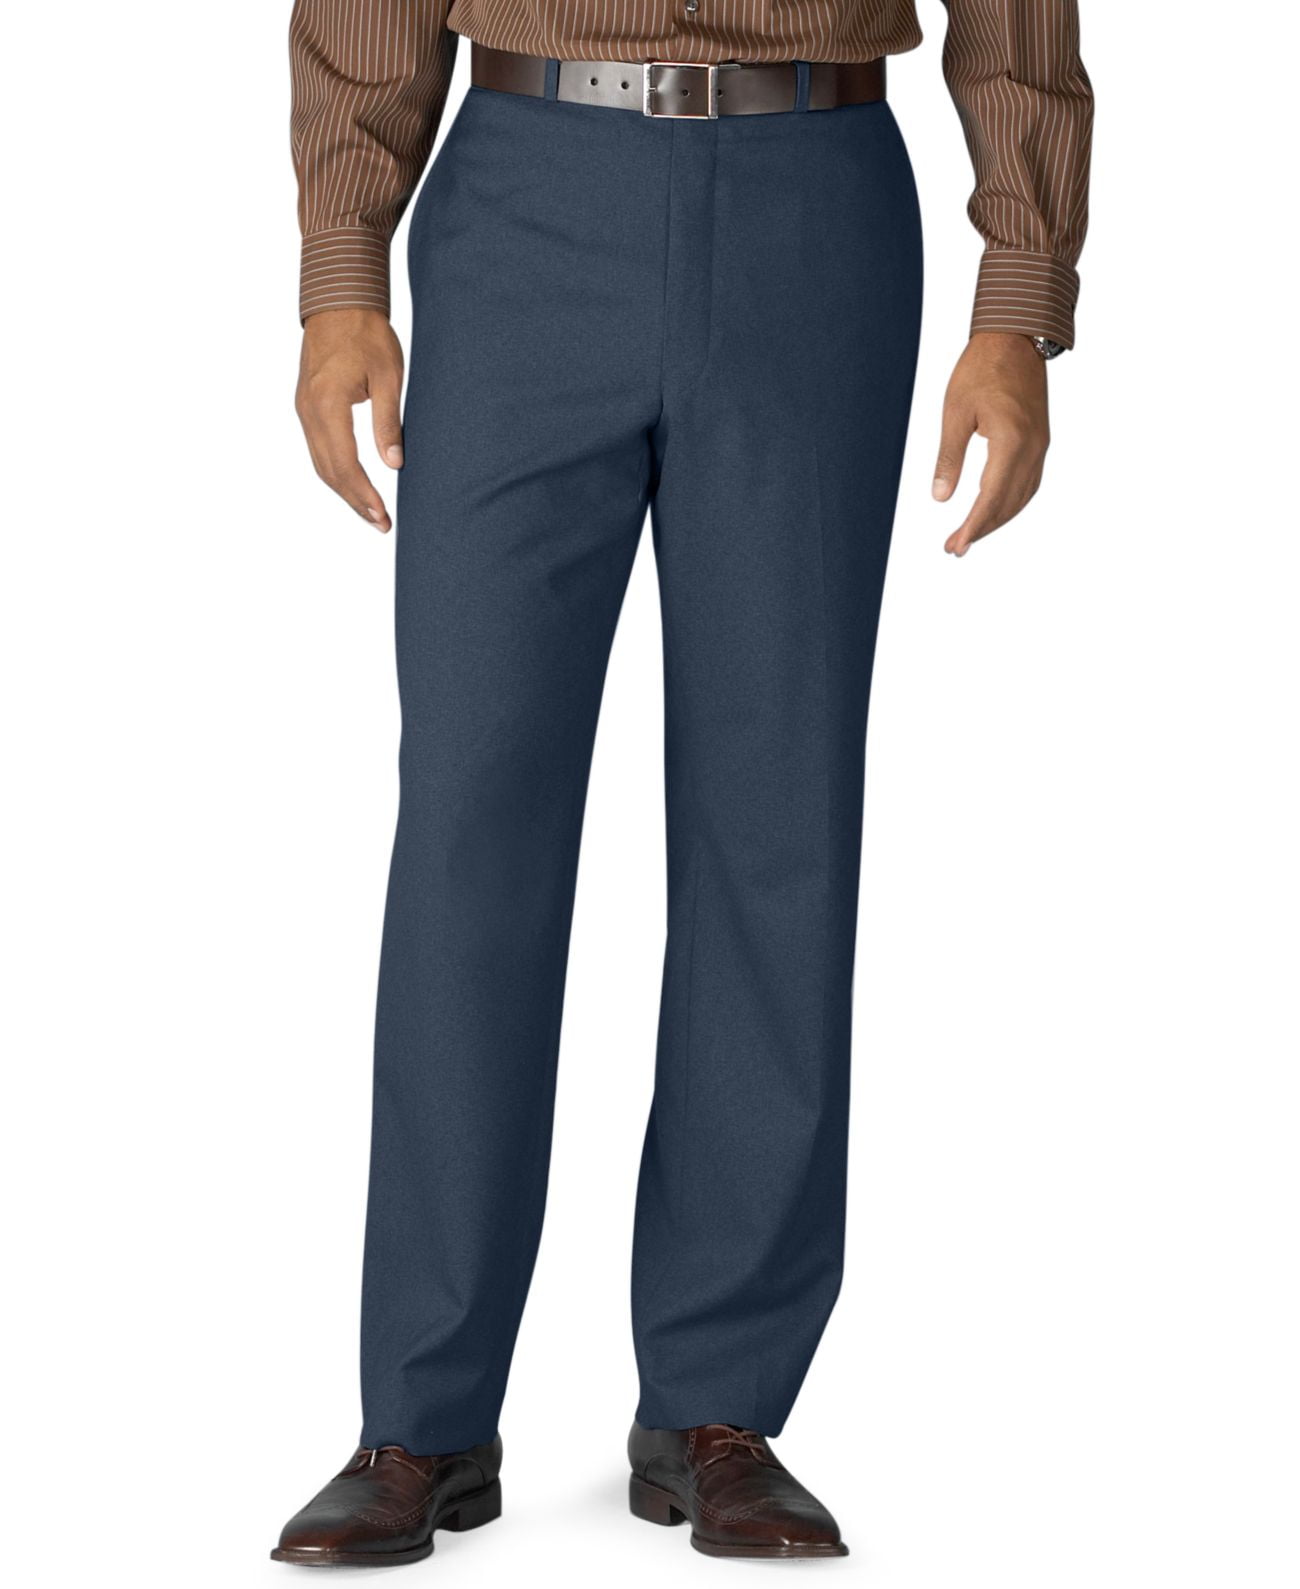 Lauren Ralph Lauren 100% Wool Flat-Front Dress Pants, Navy, 33X30